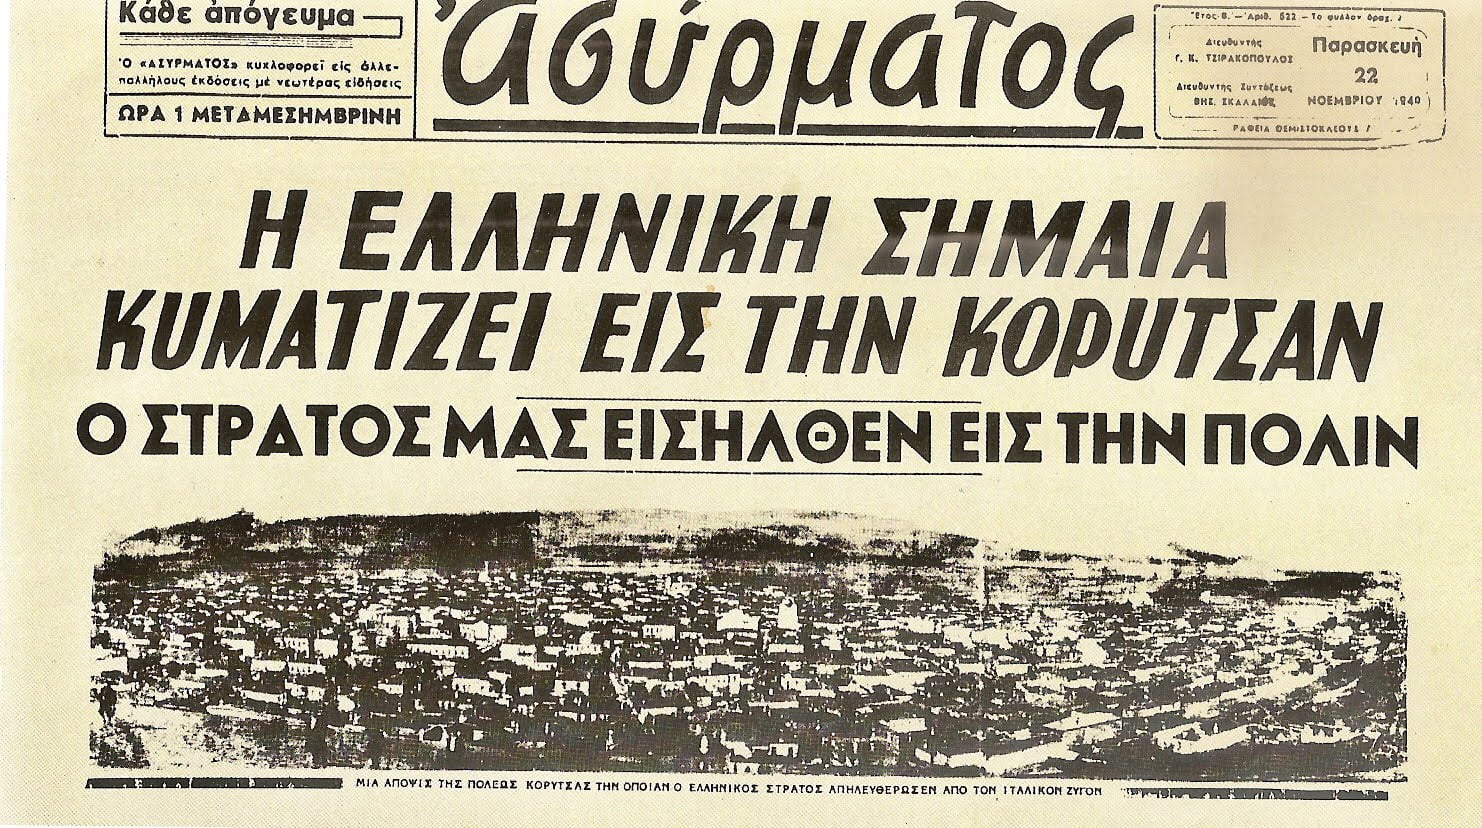 Παρασκευή 22 Νομεβρίου 1940 ο Ελληνικός Στρατός απελευθερώνει την Κορυτσά